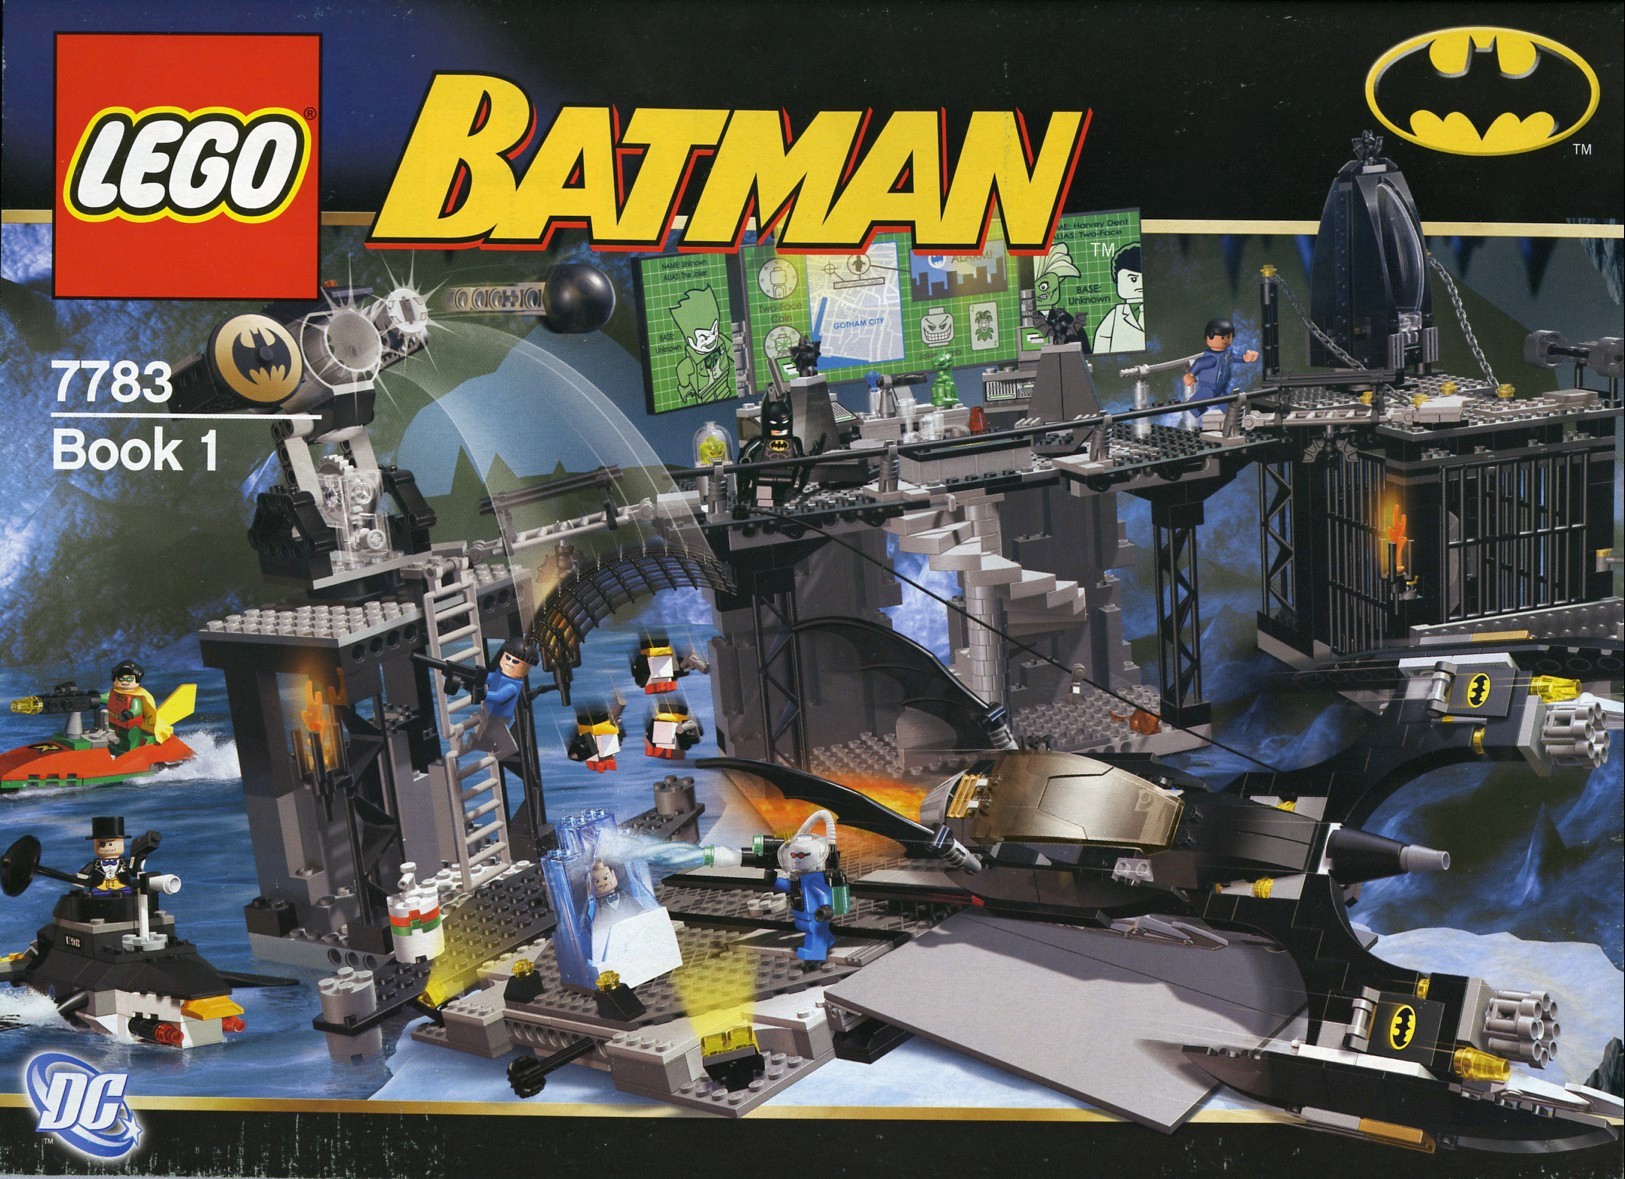 LEGO Batman I Minifigures Comic-Con 03 Commemorative Limited Collectors Lot of 5 